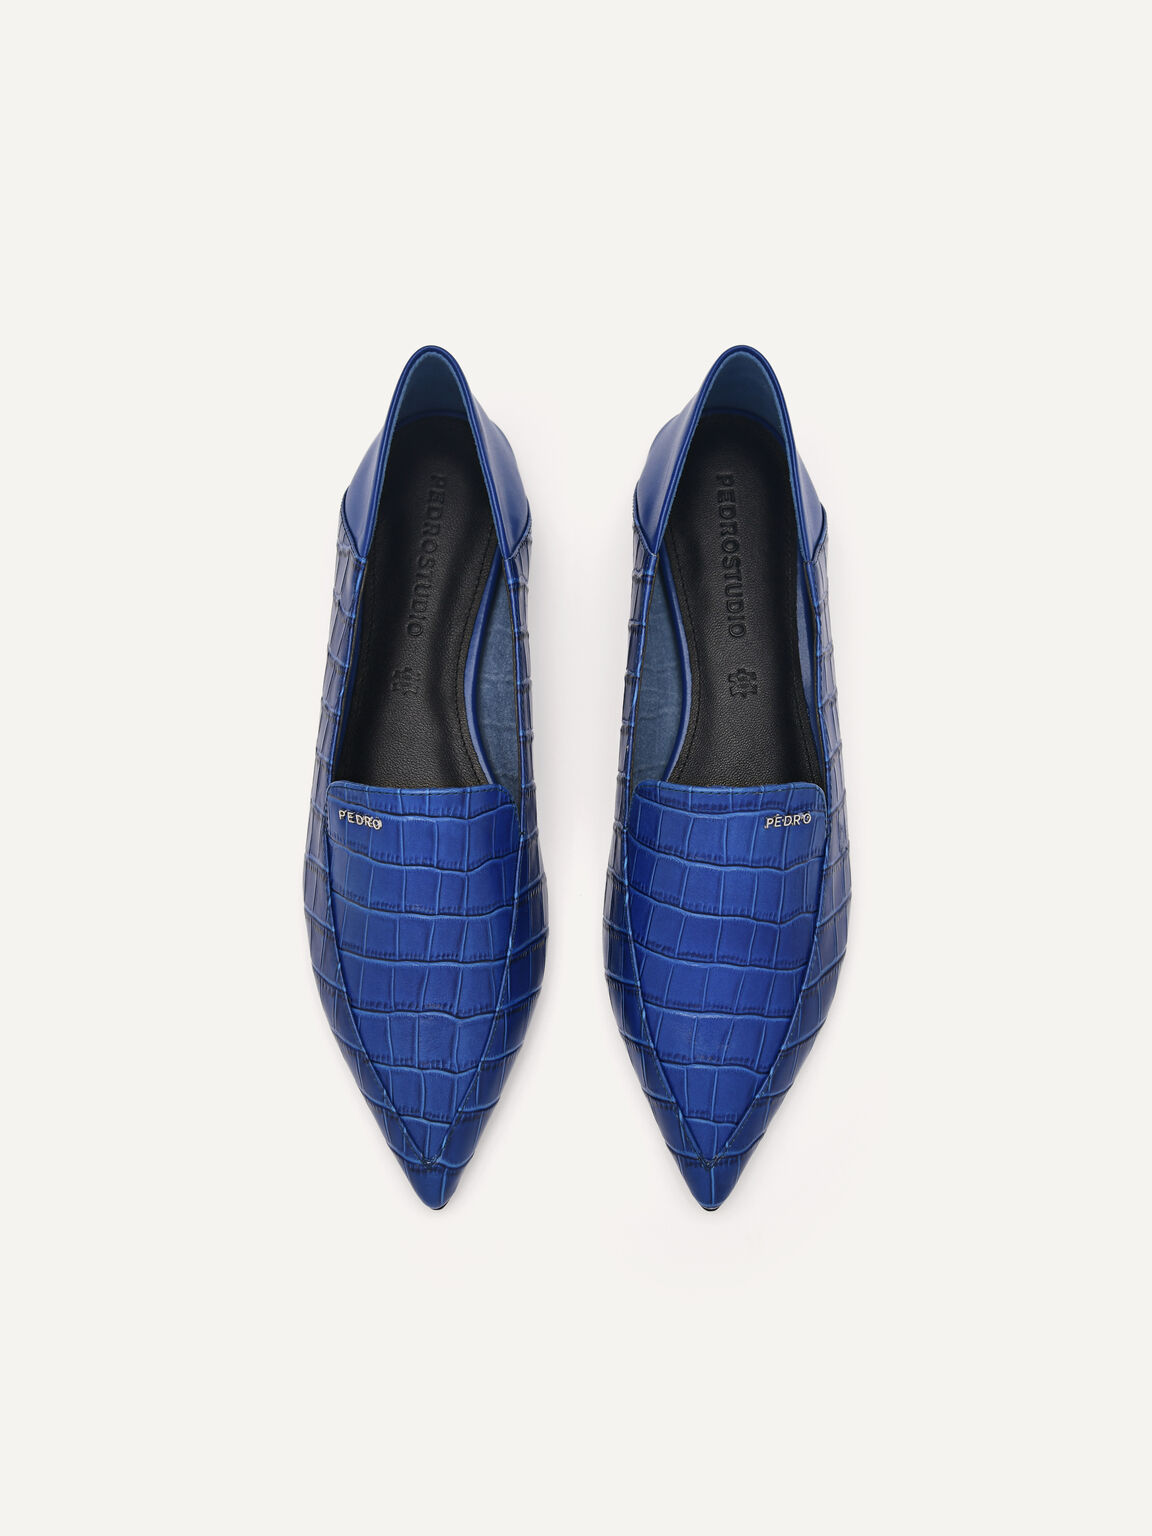 PEDRO工作室Kristen皮革平底鞋, 海军蓝色